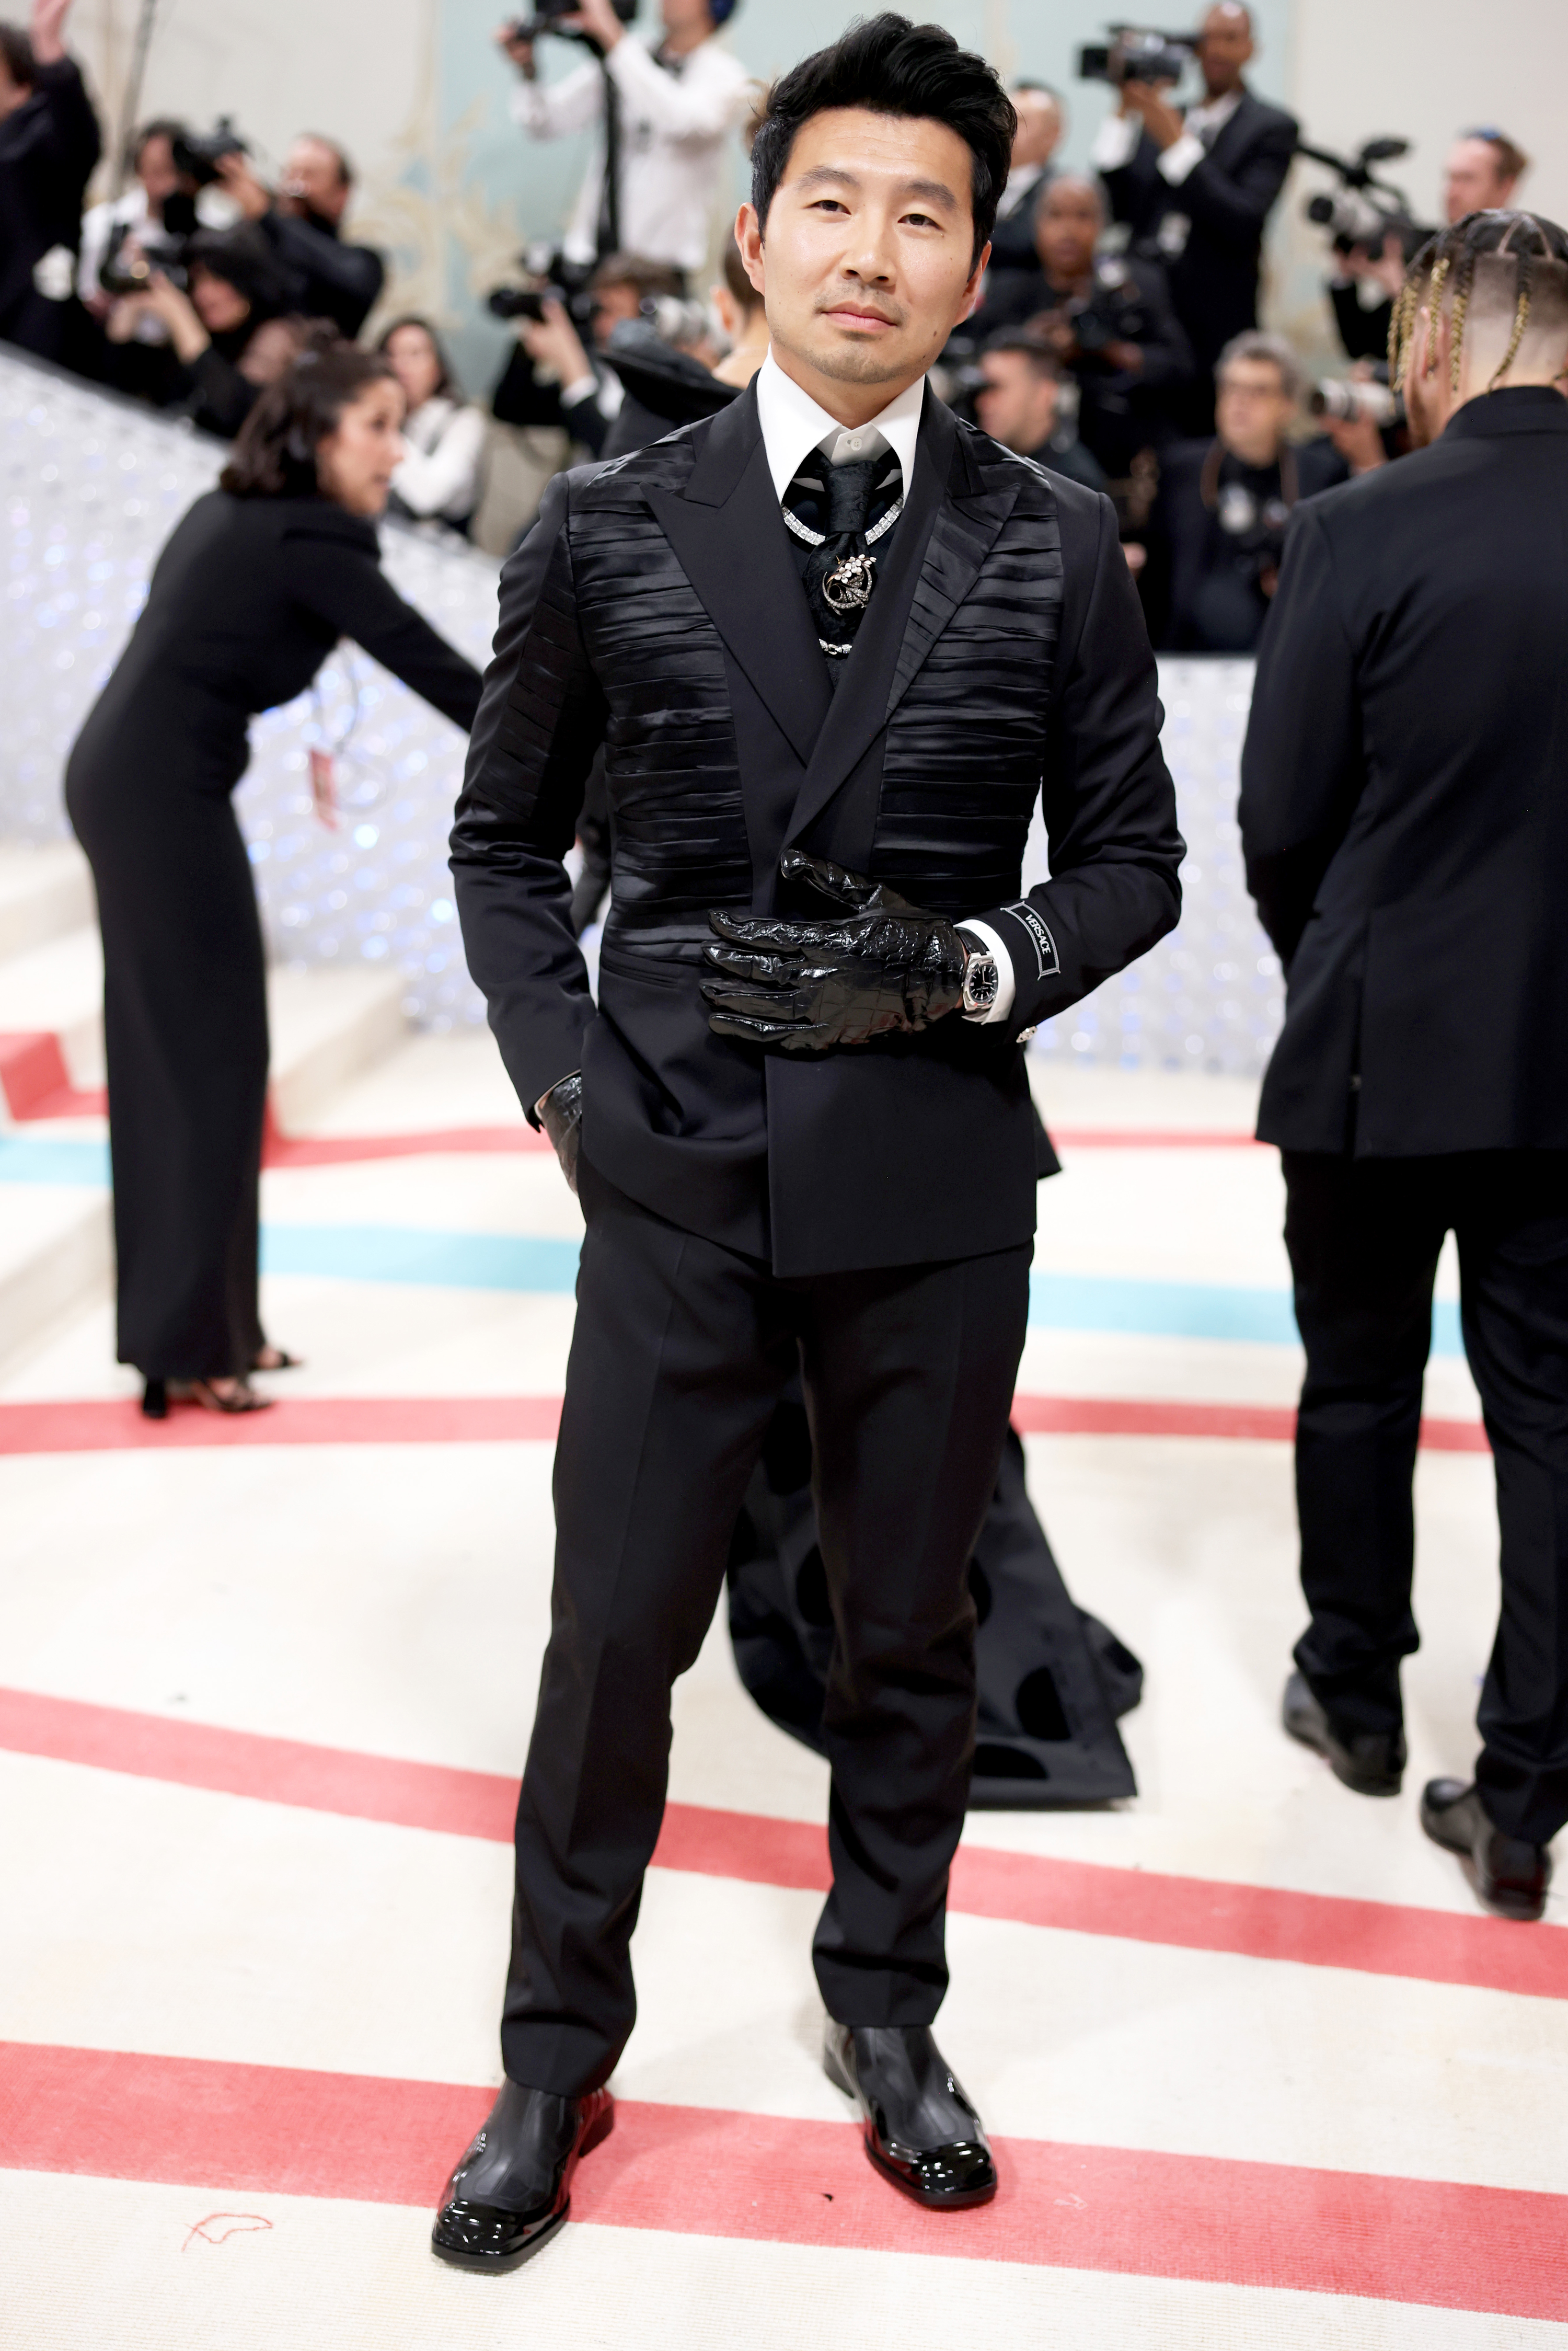 Tommy Hilfiger Wears Karl Lagerfeld's Shirt to the Met Gala 2023 – WWD